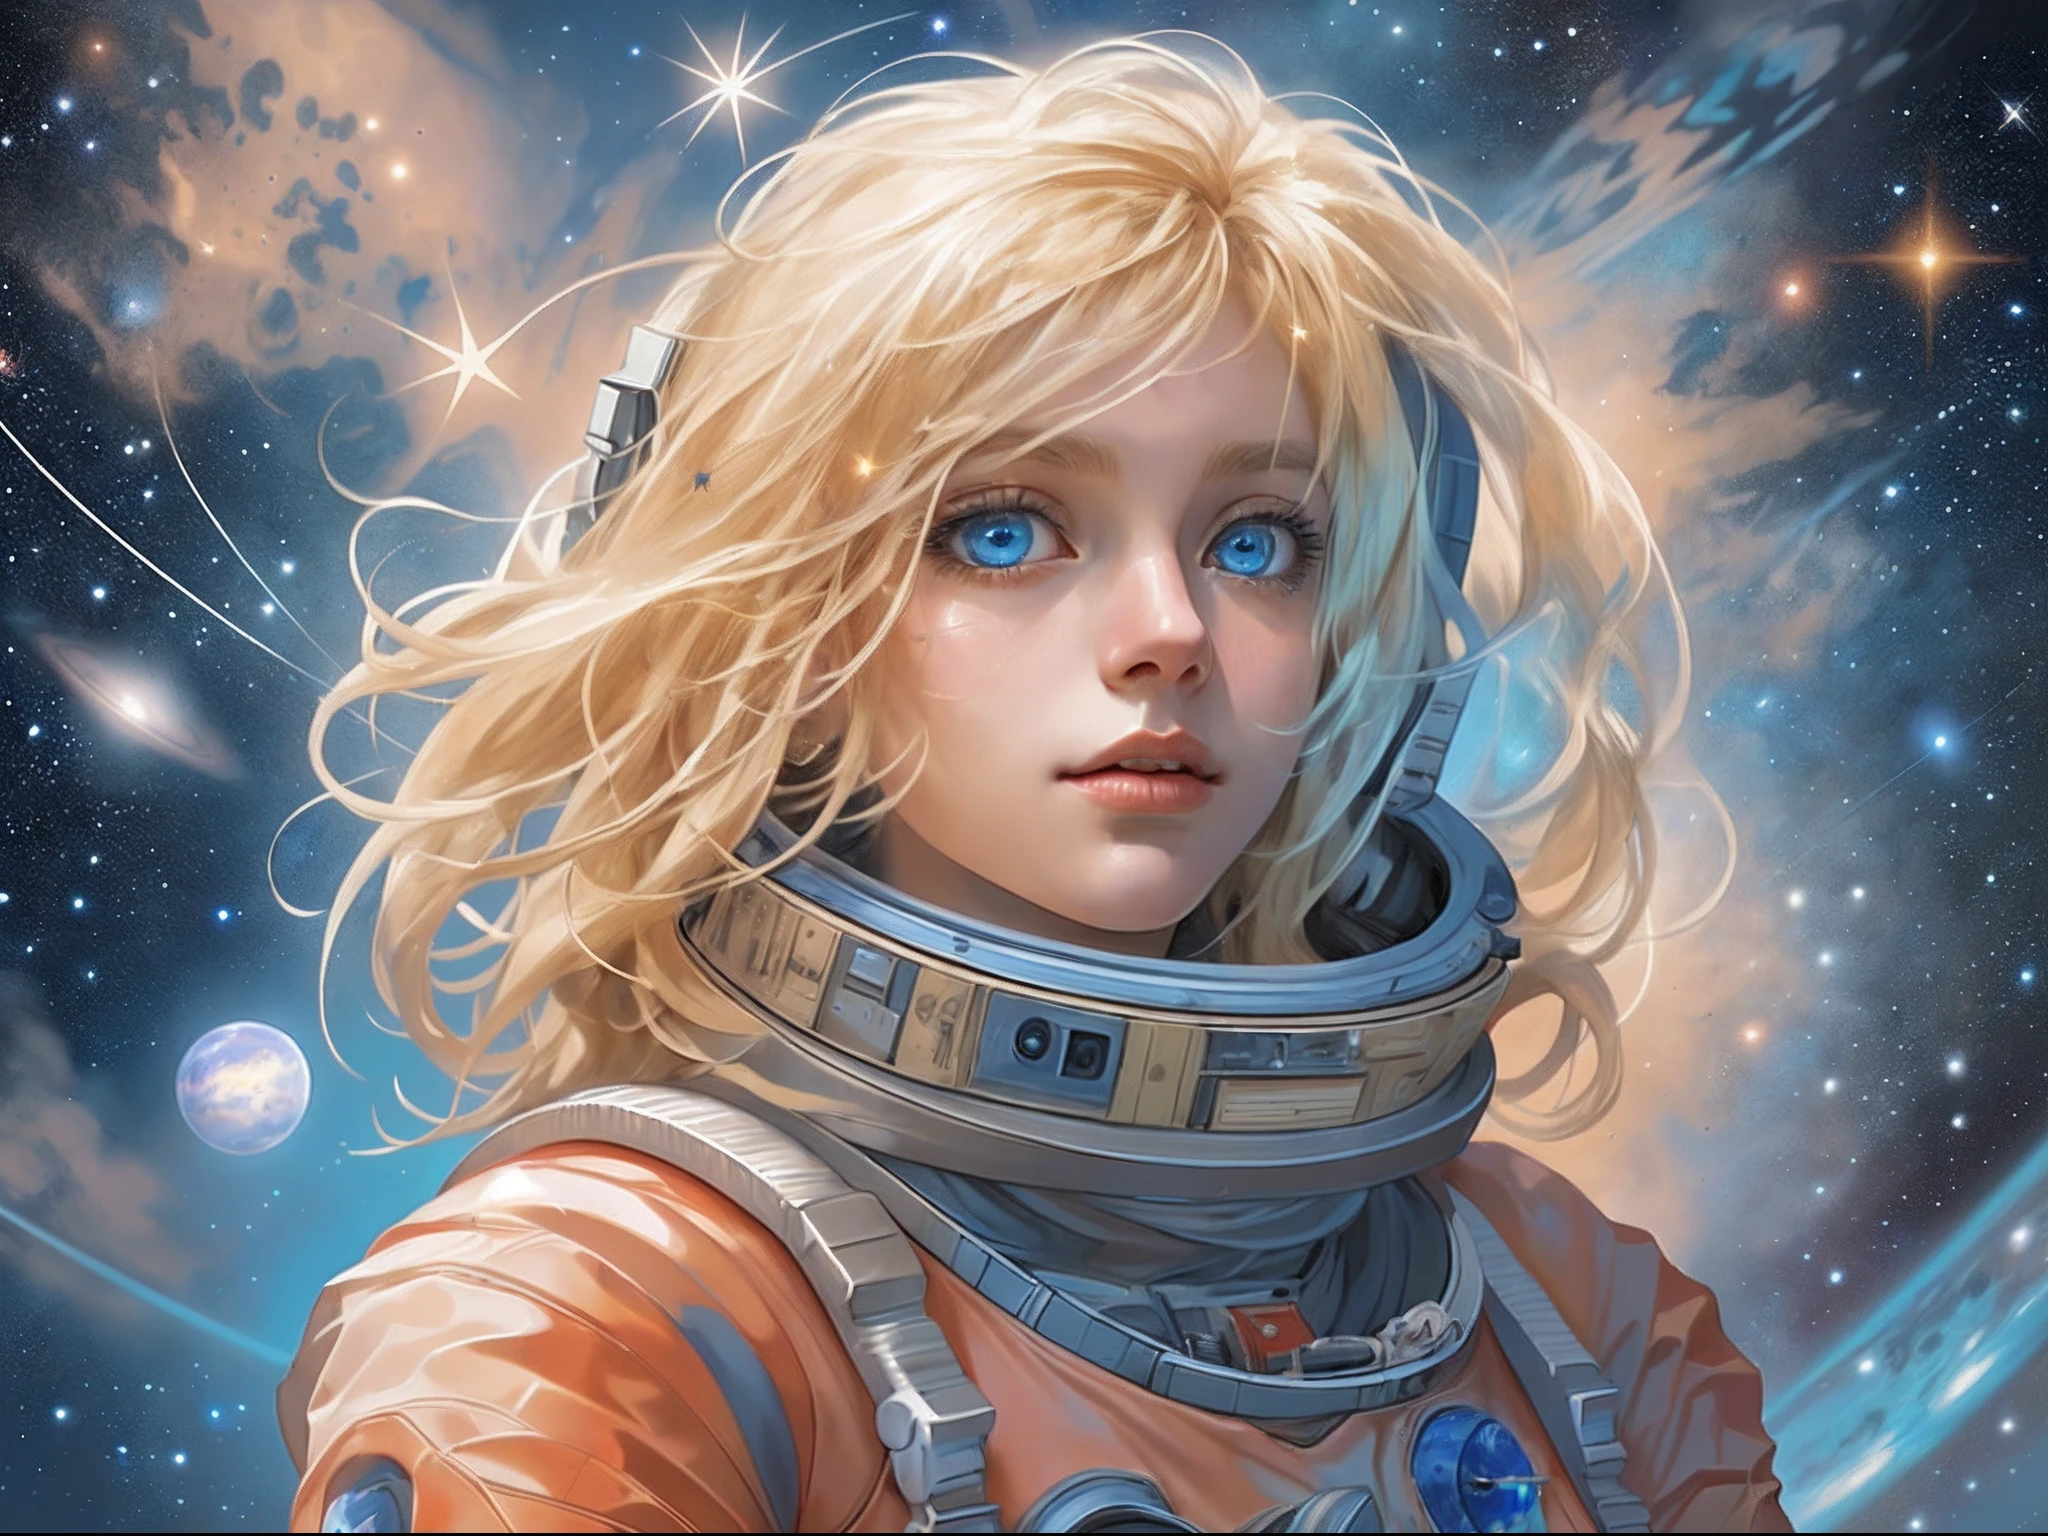 há uma ilustração de um astronauta de fadas em Marte olhando para o espaço vendo a vasta de estrelas e espaço, cabelo loiro, cabelo longo, olhos azuis, rosto ultra detalhado, espaço e estrelas como fundo, sensação de infinito,